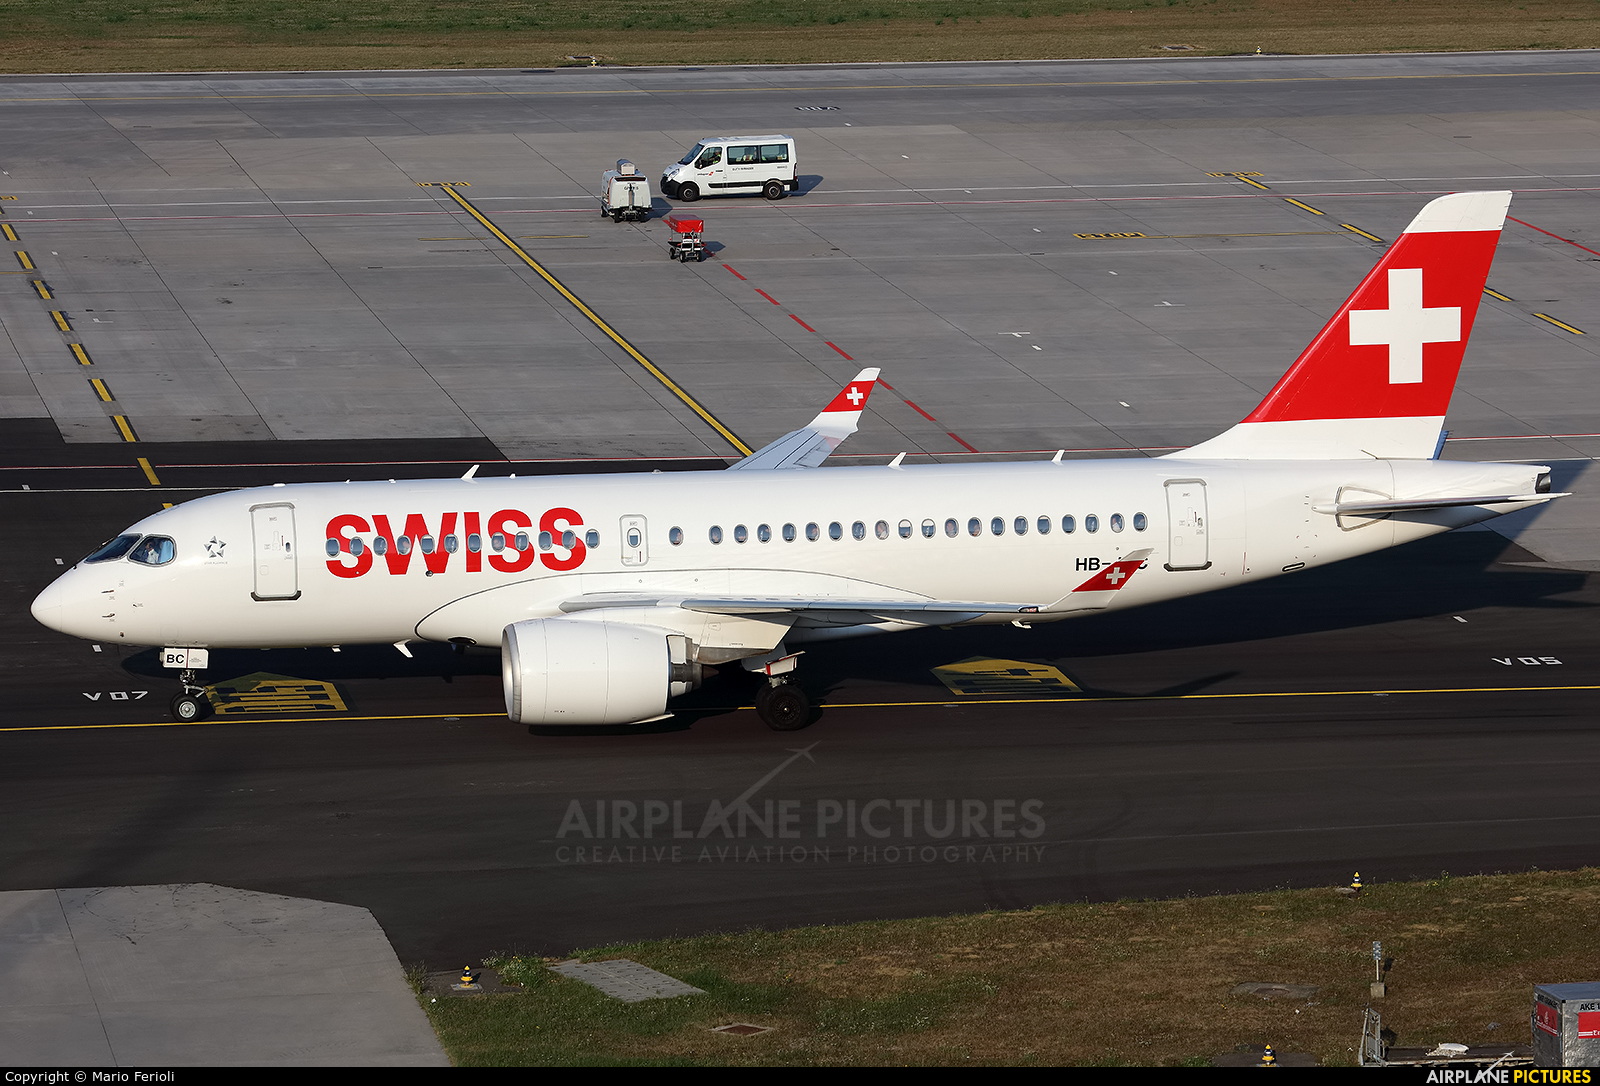 Swiss HB-JBC aircraft at Zurich